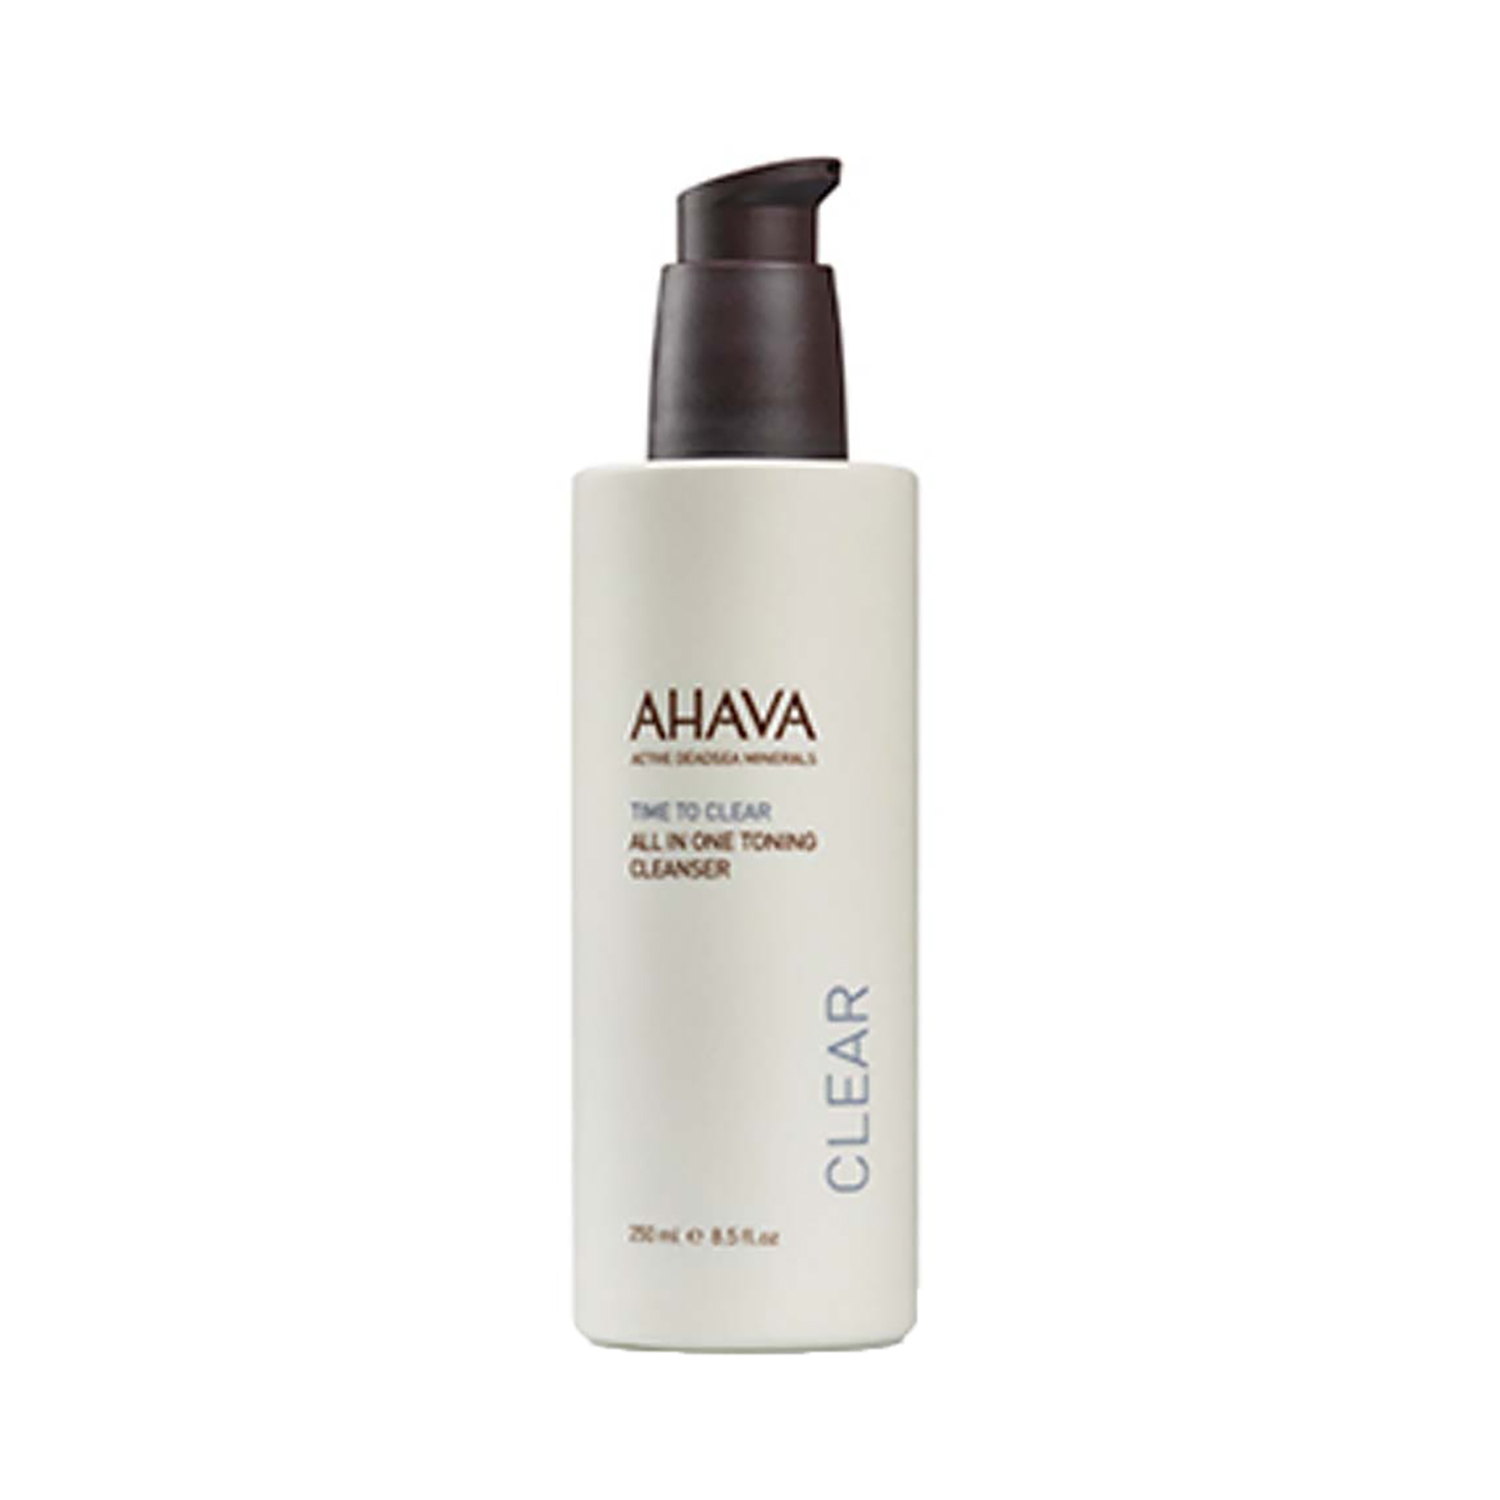 Ahava | Ahava All In One Toning Cleanser (250ml)